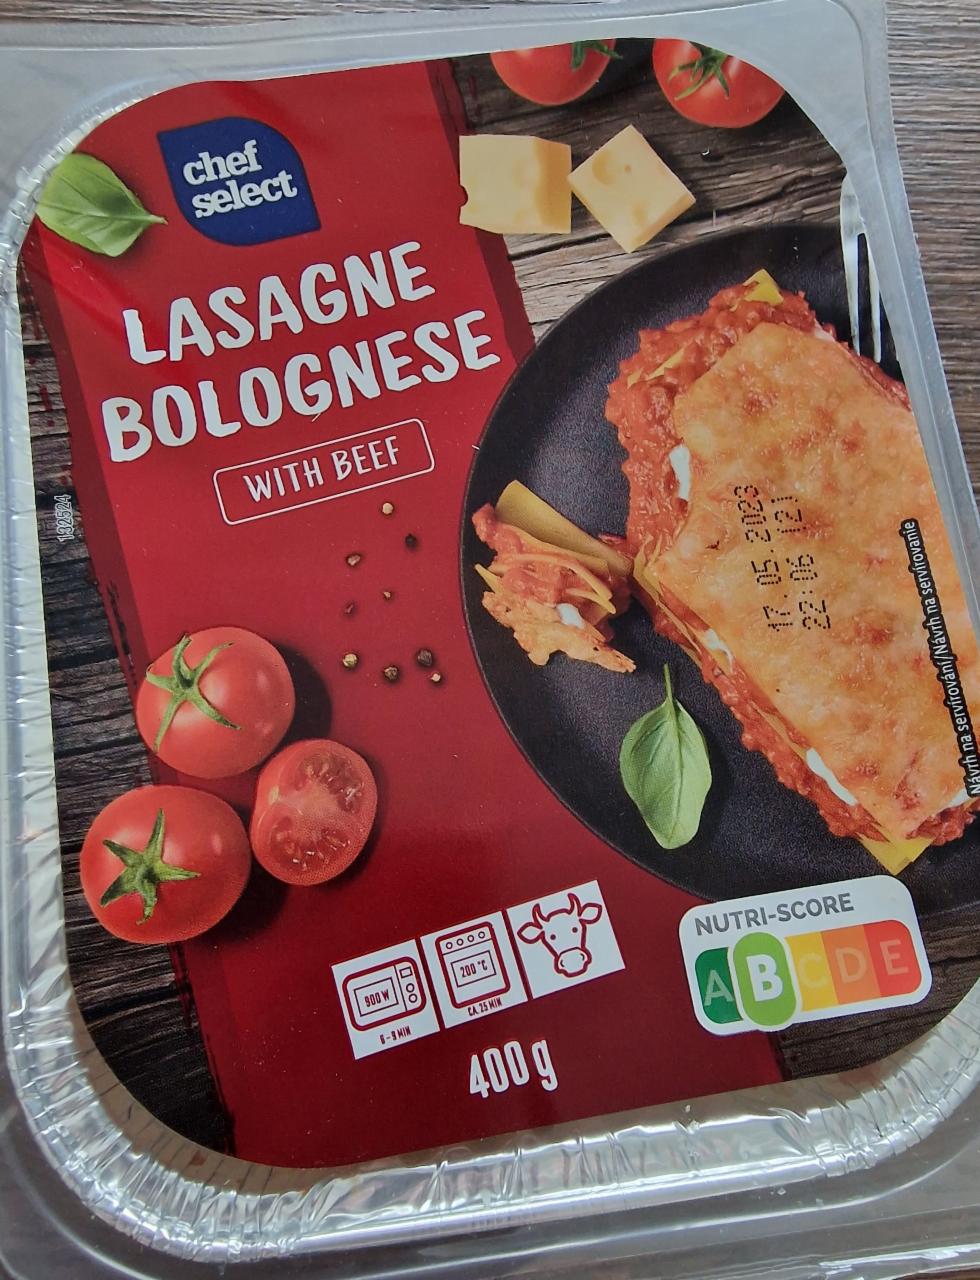 Lasagne Chef a with hodnoty kJ nutriční kalorie, - Select beef Bolognese